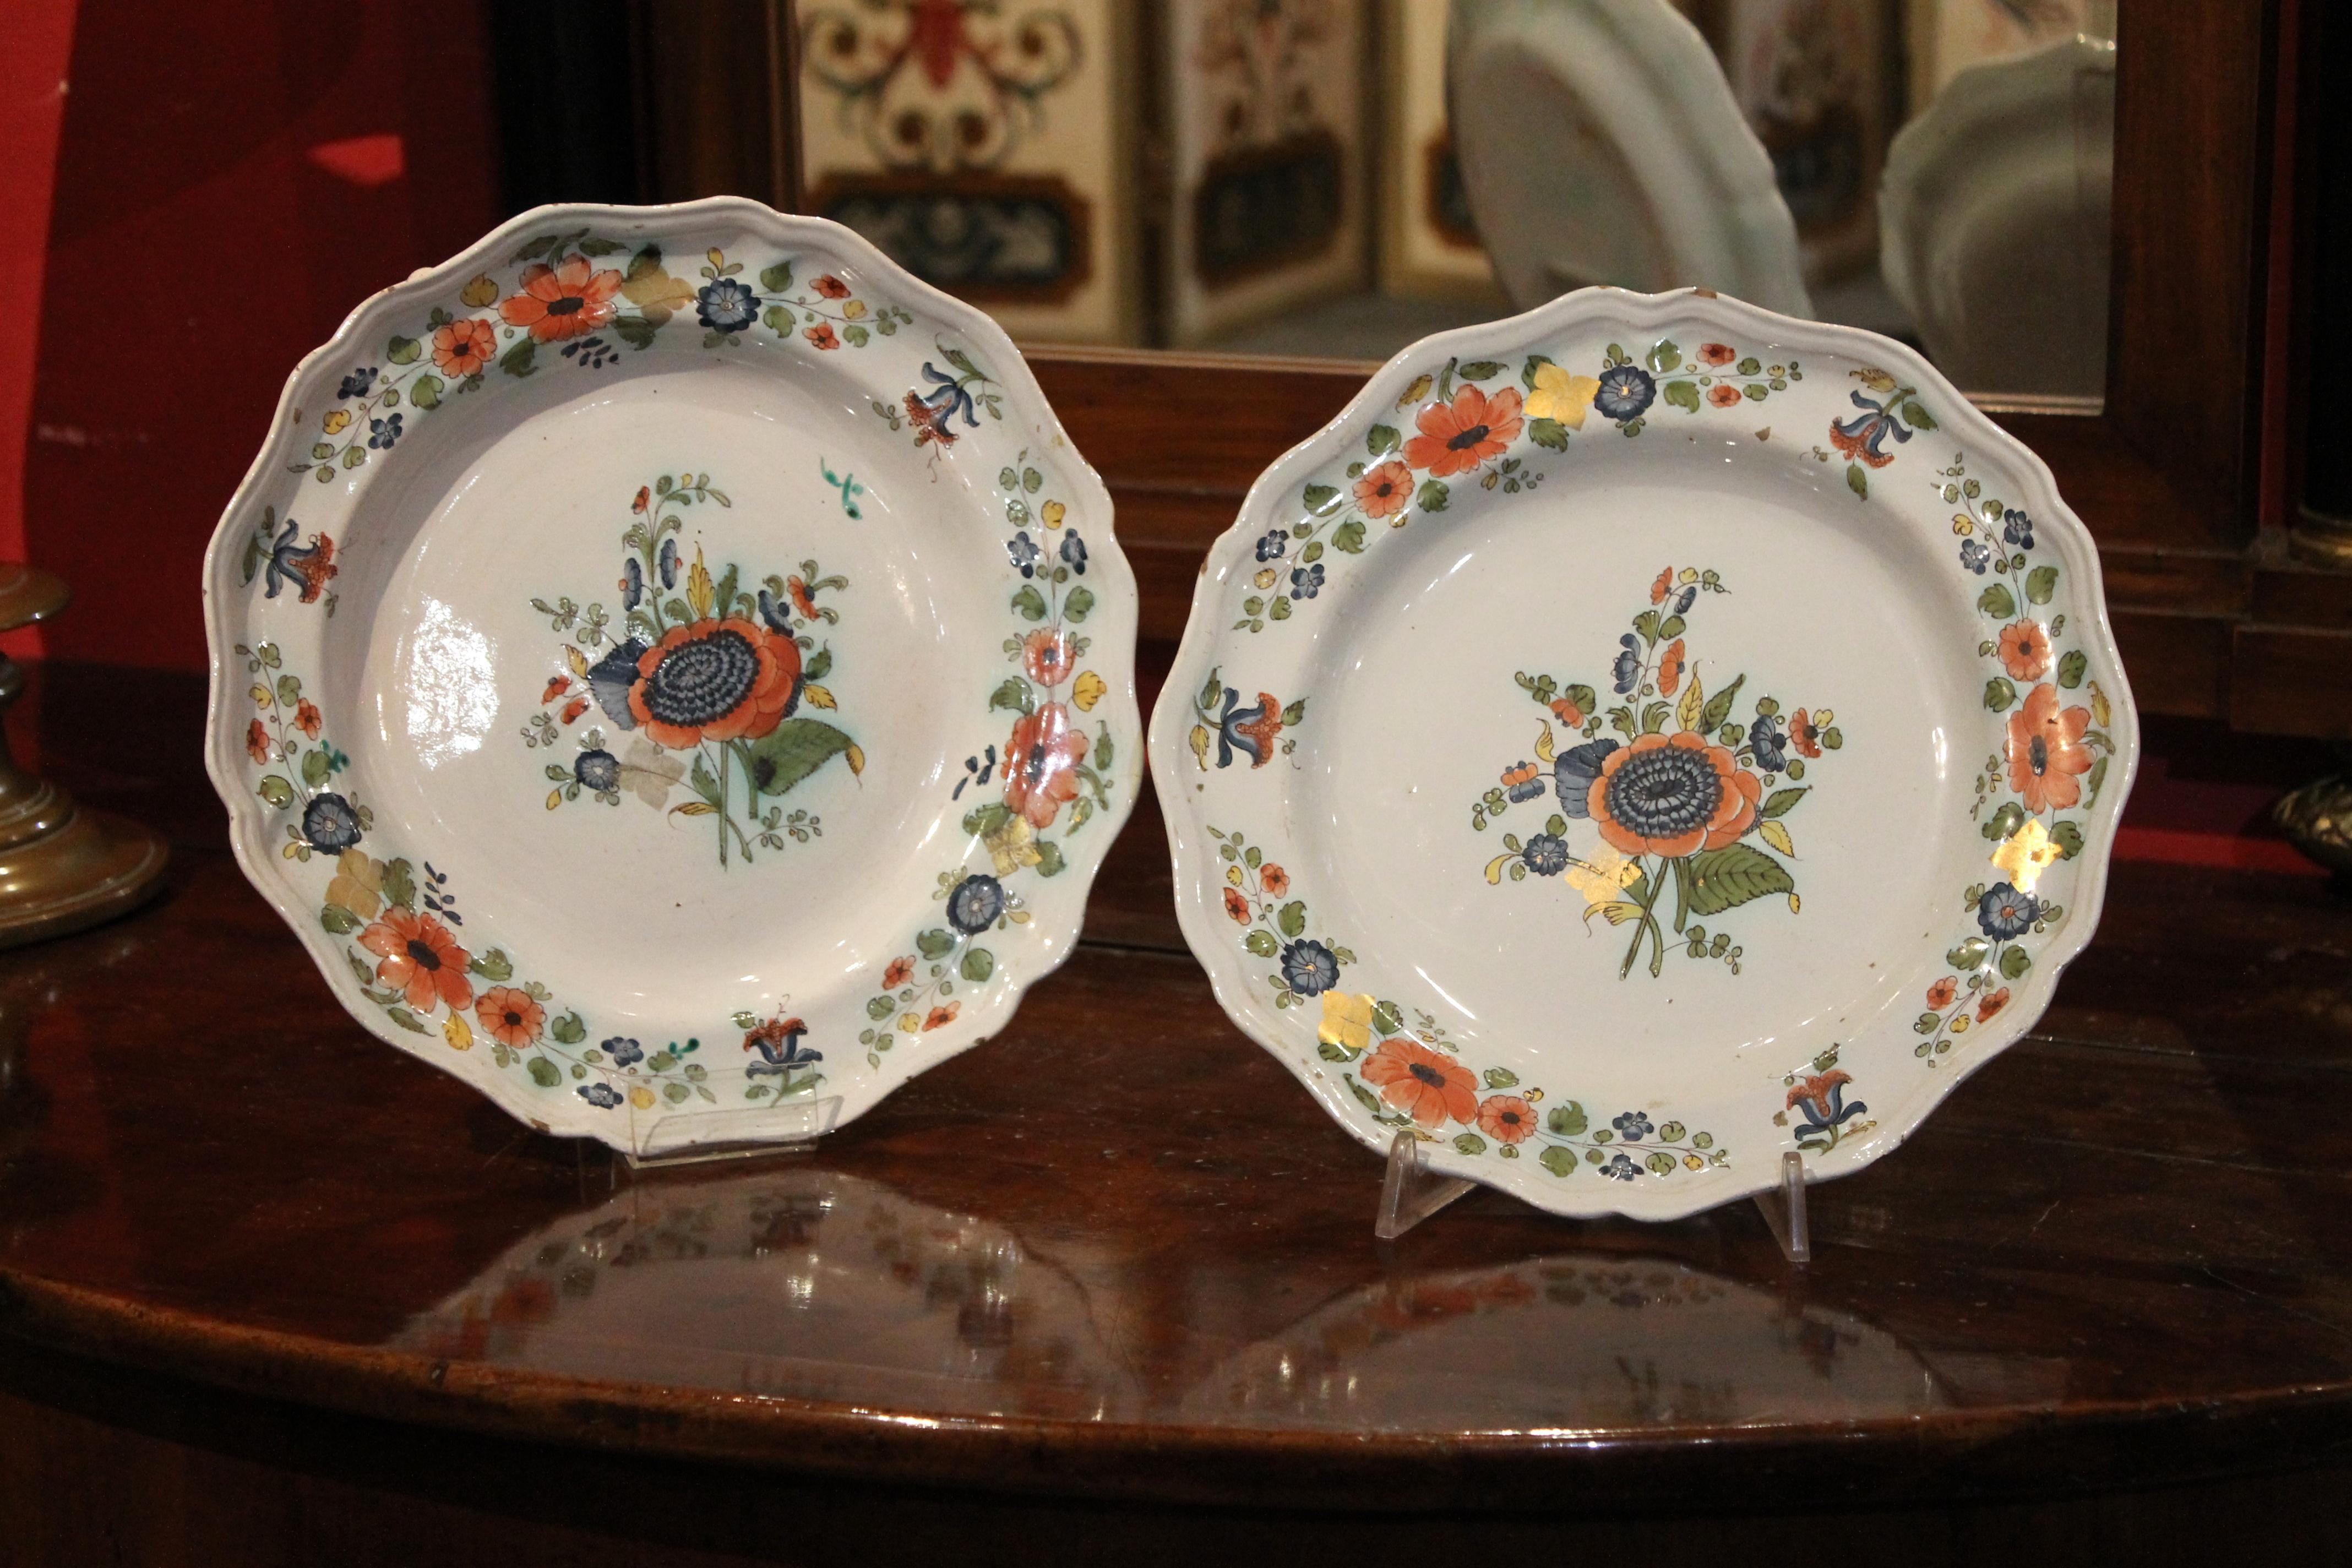 Ces deux magnifiques plats anciens en porcelaine multicolore peints à la main datent de 1700.
Chaque assiette a des bords façonnés avec des reliefs moulés et garnis, le fond en porcelaine blanche est décoré de fleurs et de feuilles sur toute la